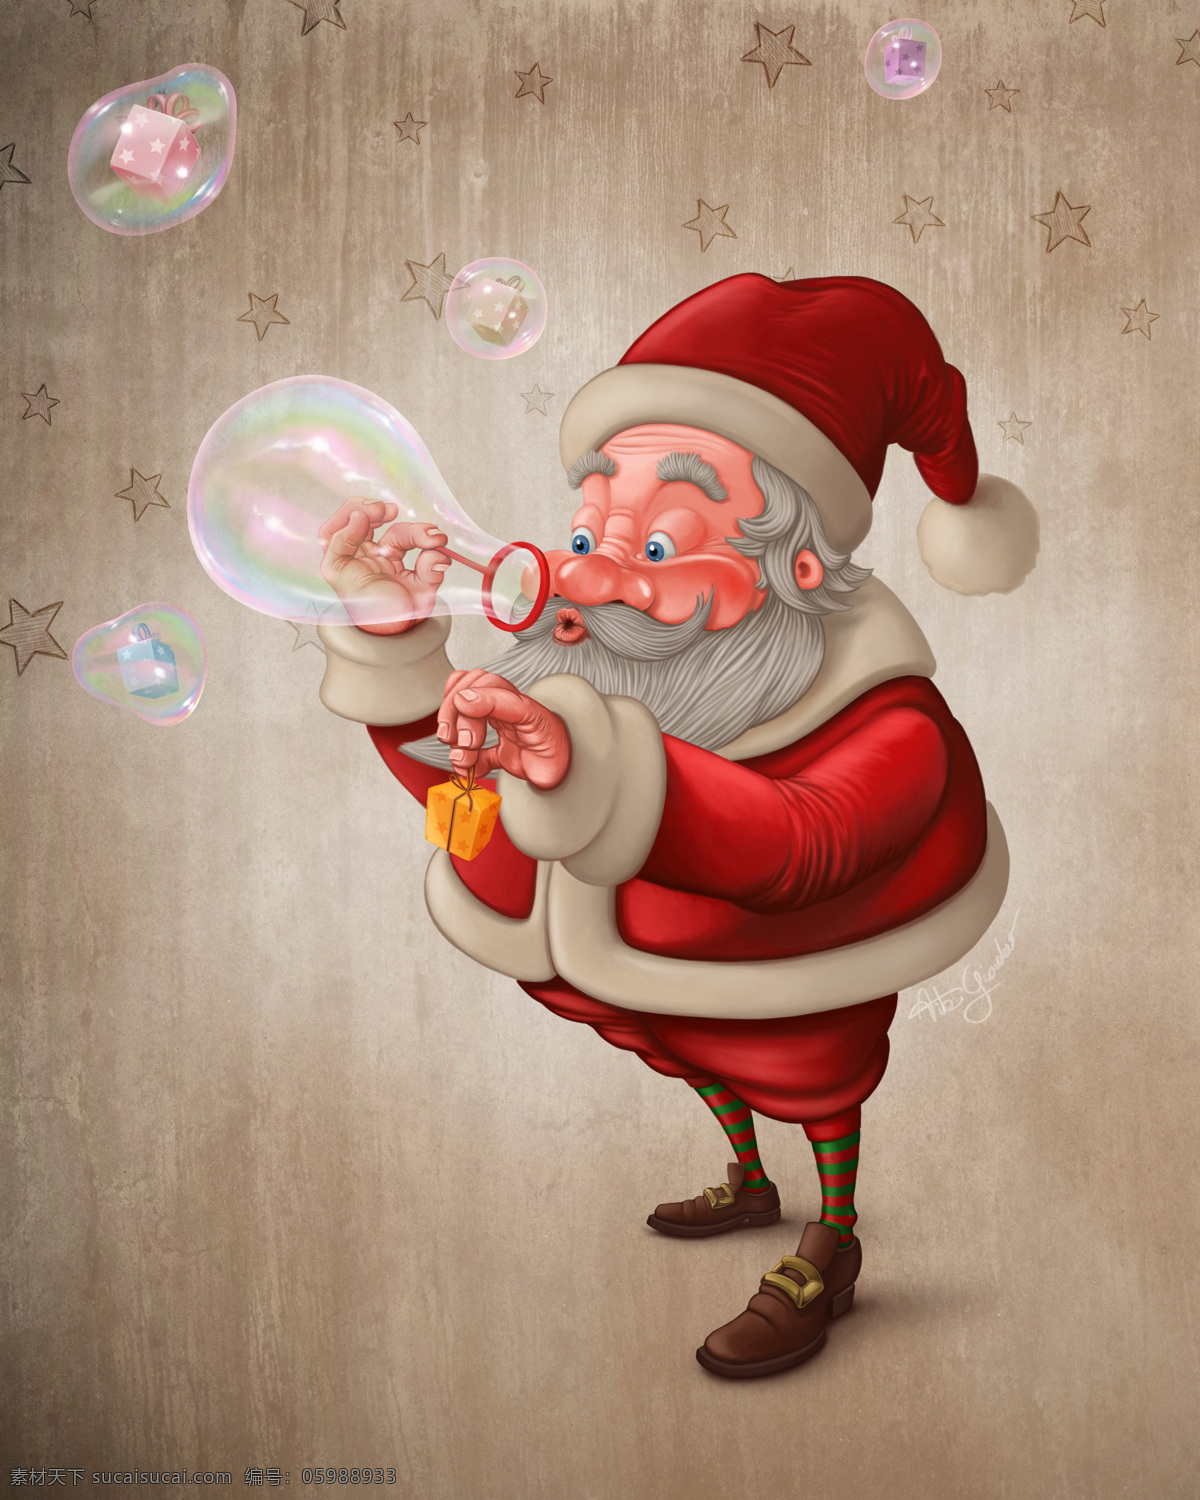 吹 泡泡 圣诞老人 礼物 卡通圣诞老人 圣诞节漫画 圣诞节素材 礼包 圣诞节图片 生活百科